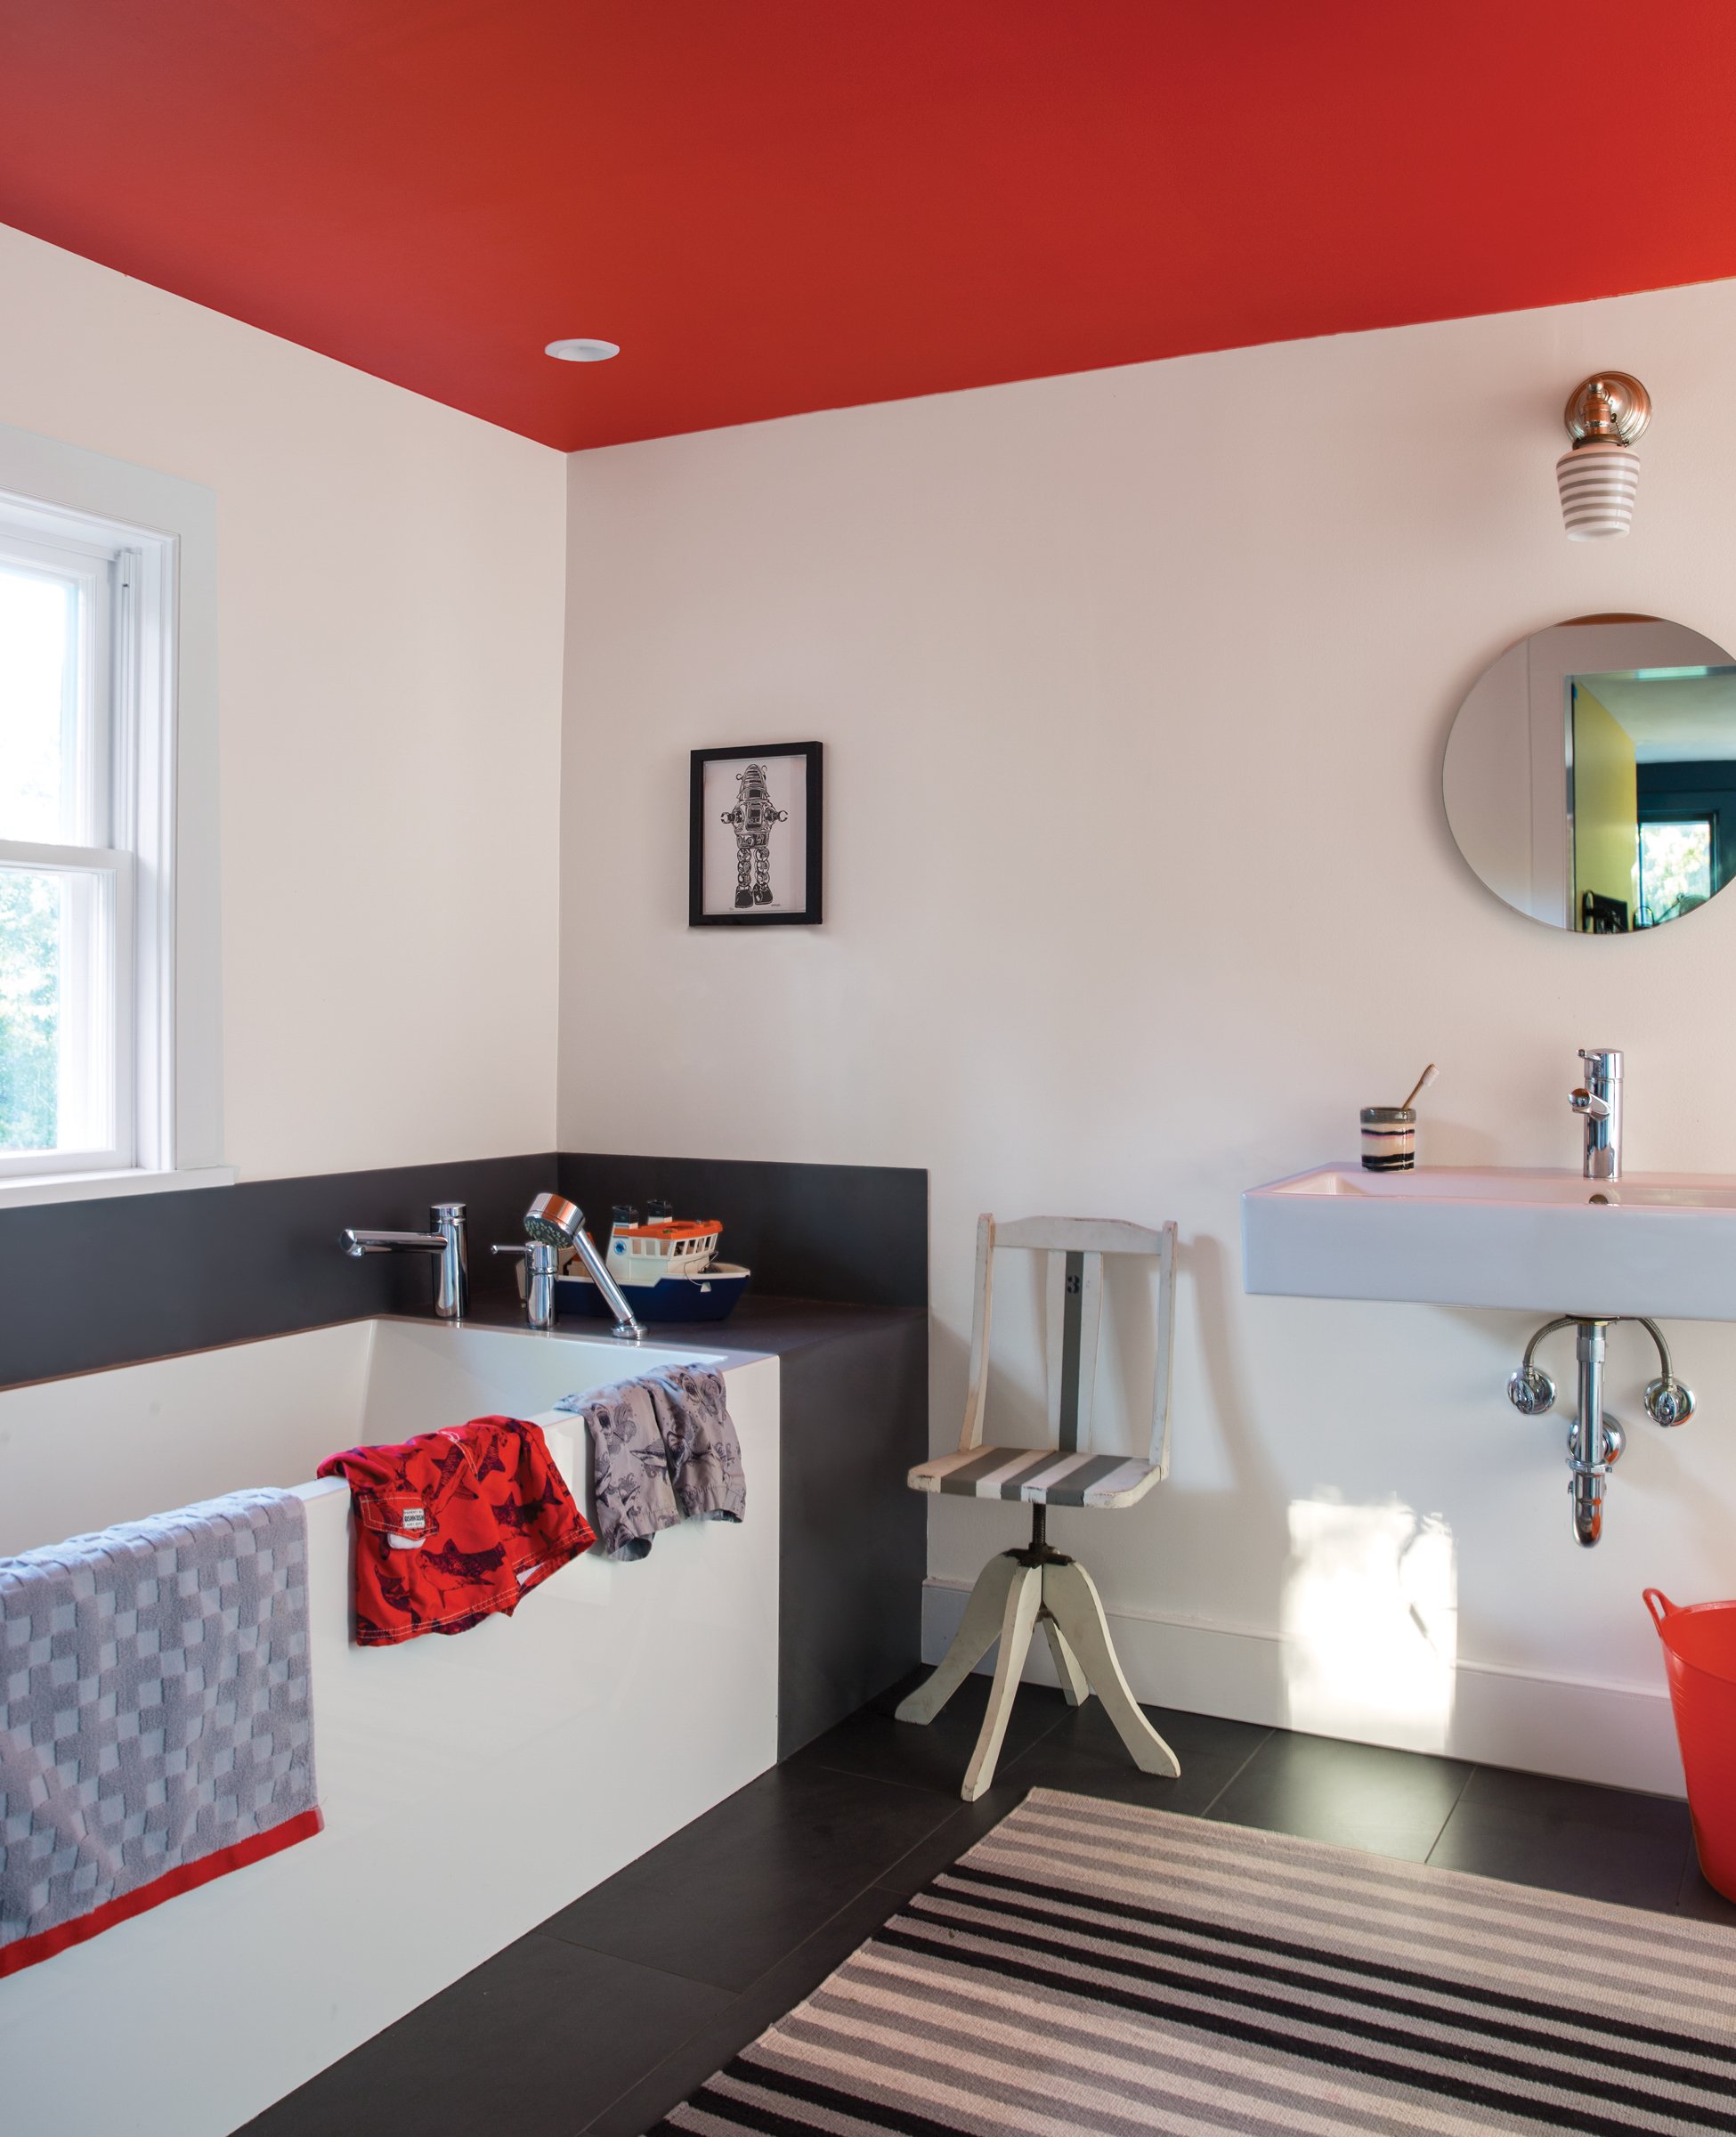 Bathroom_with_red_orange_ceiling.jpg